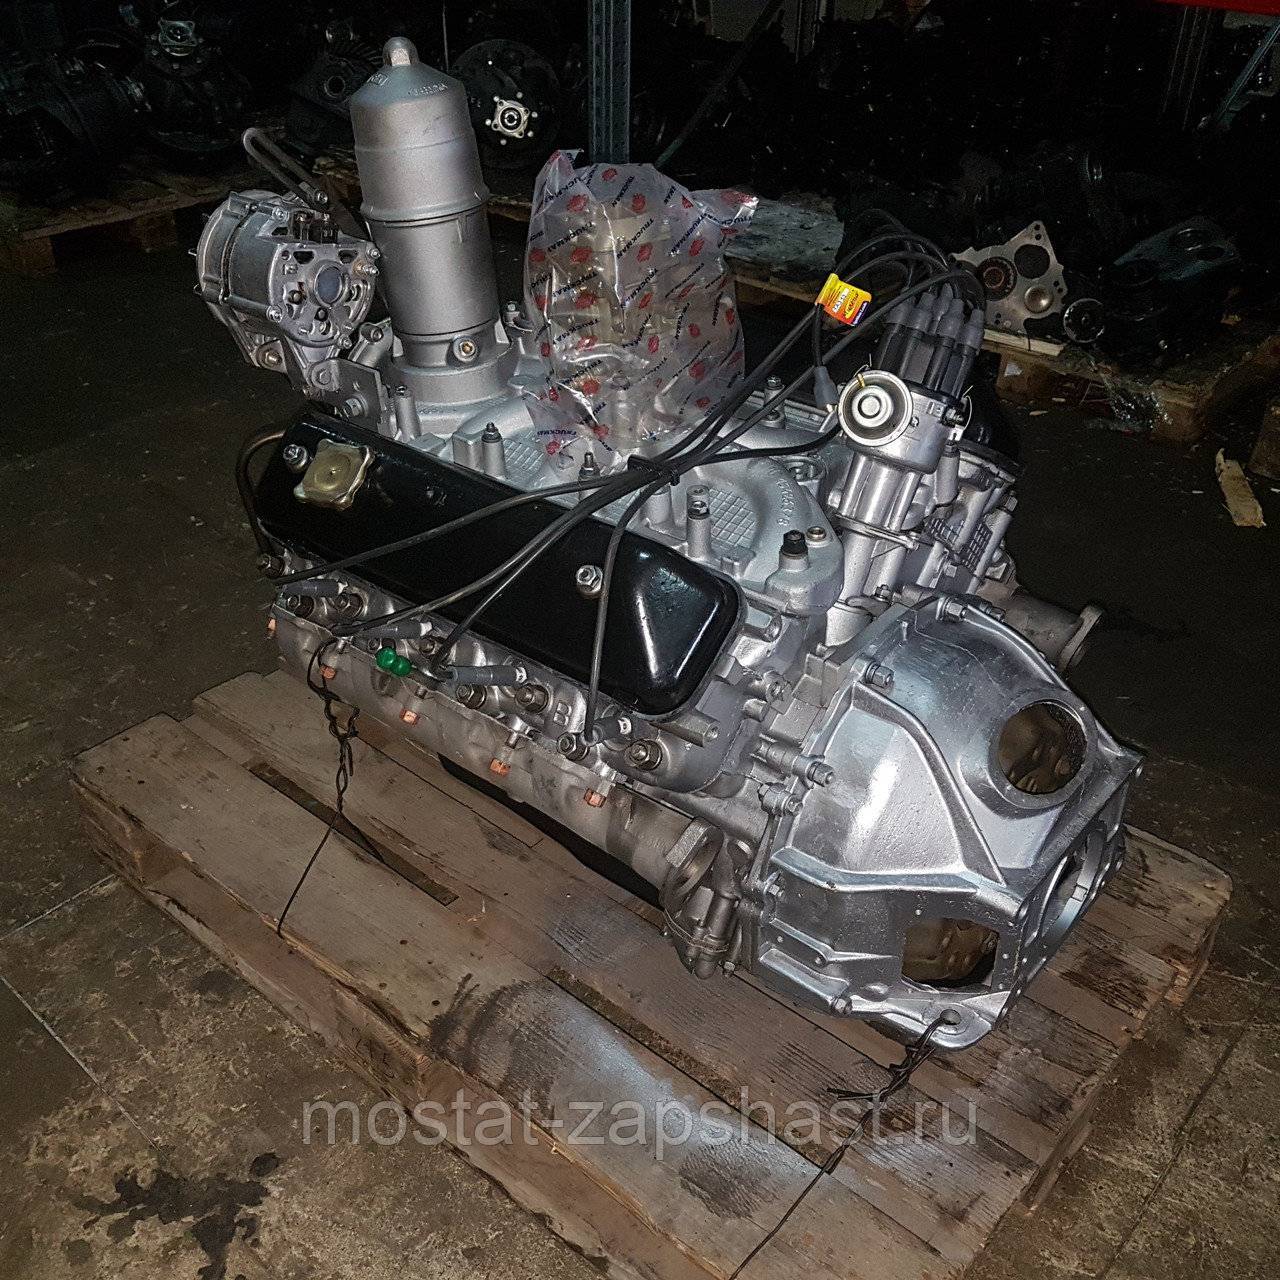 Змз 511: технические характеристики двигателя, газель инжектор